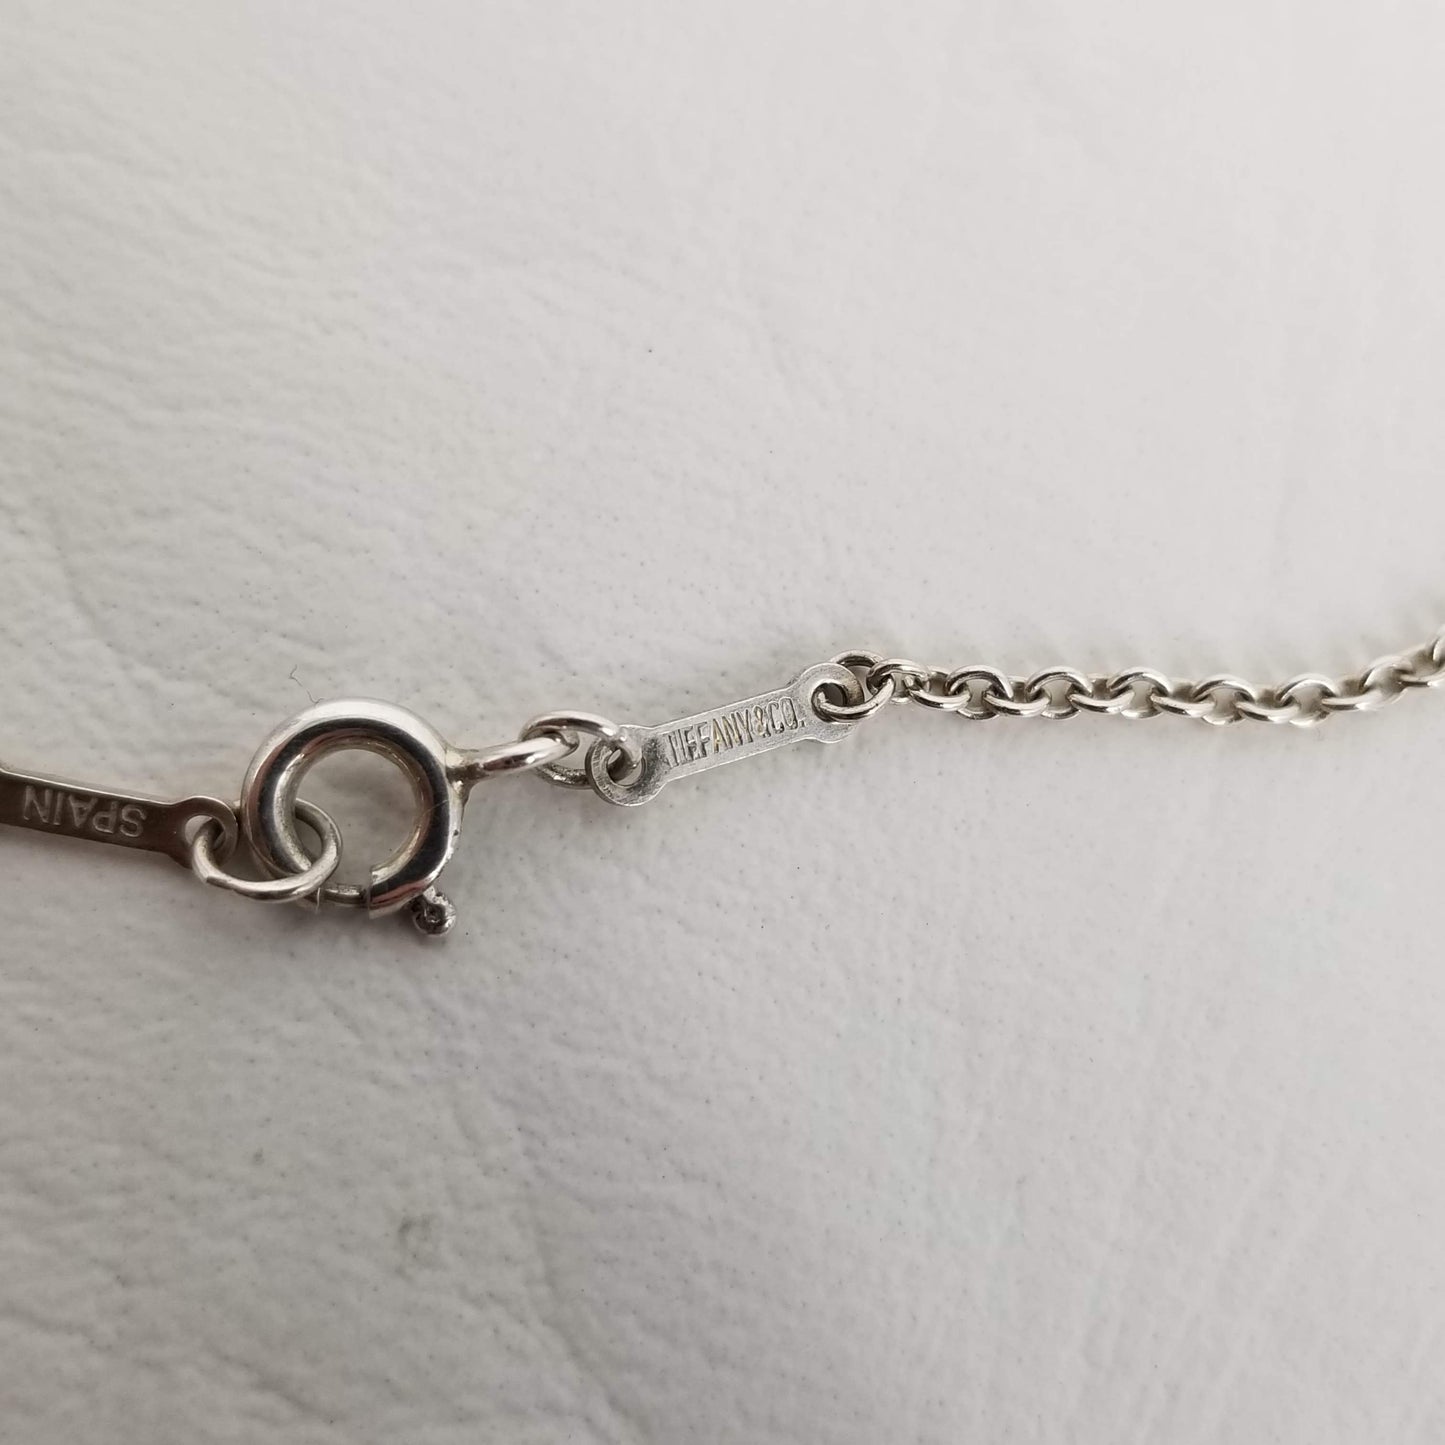 Authentic Tiffany & Co. Elsa Peretti Scorpio Pendant & 28” Chain